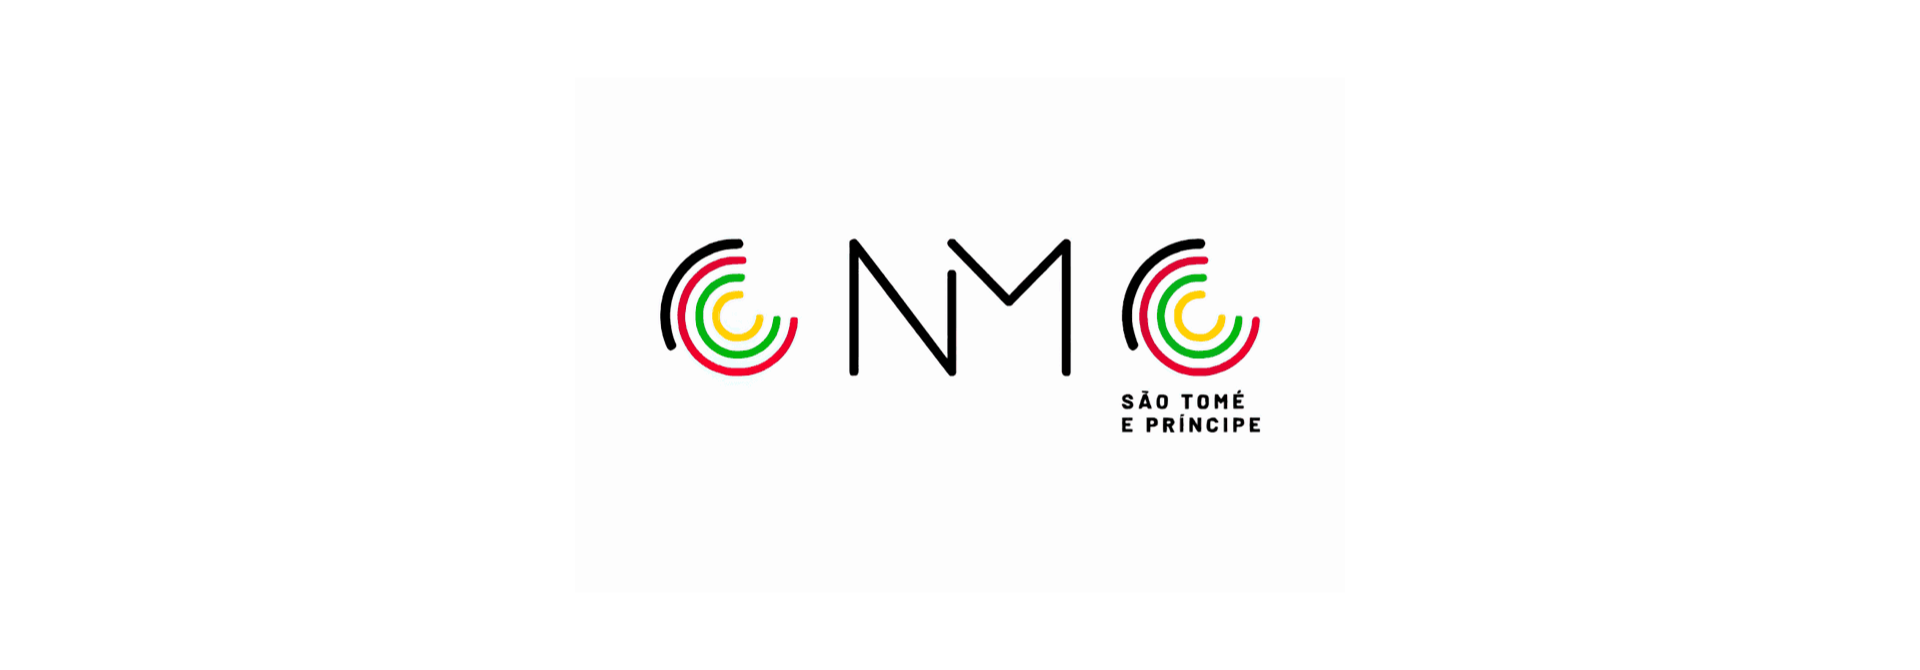 Cnmc (1)